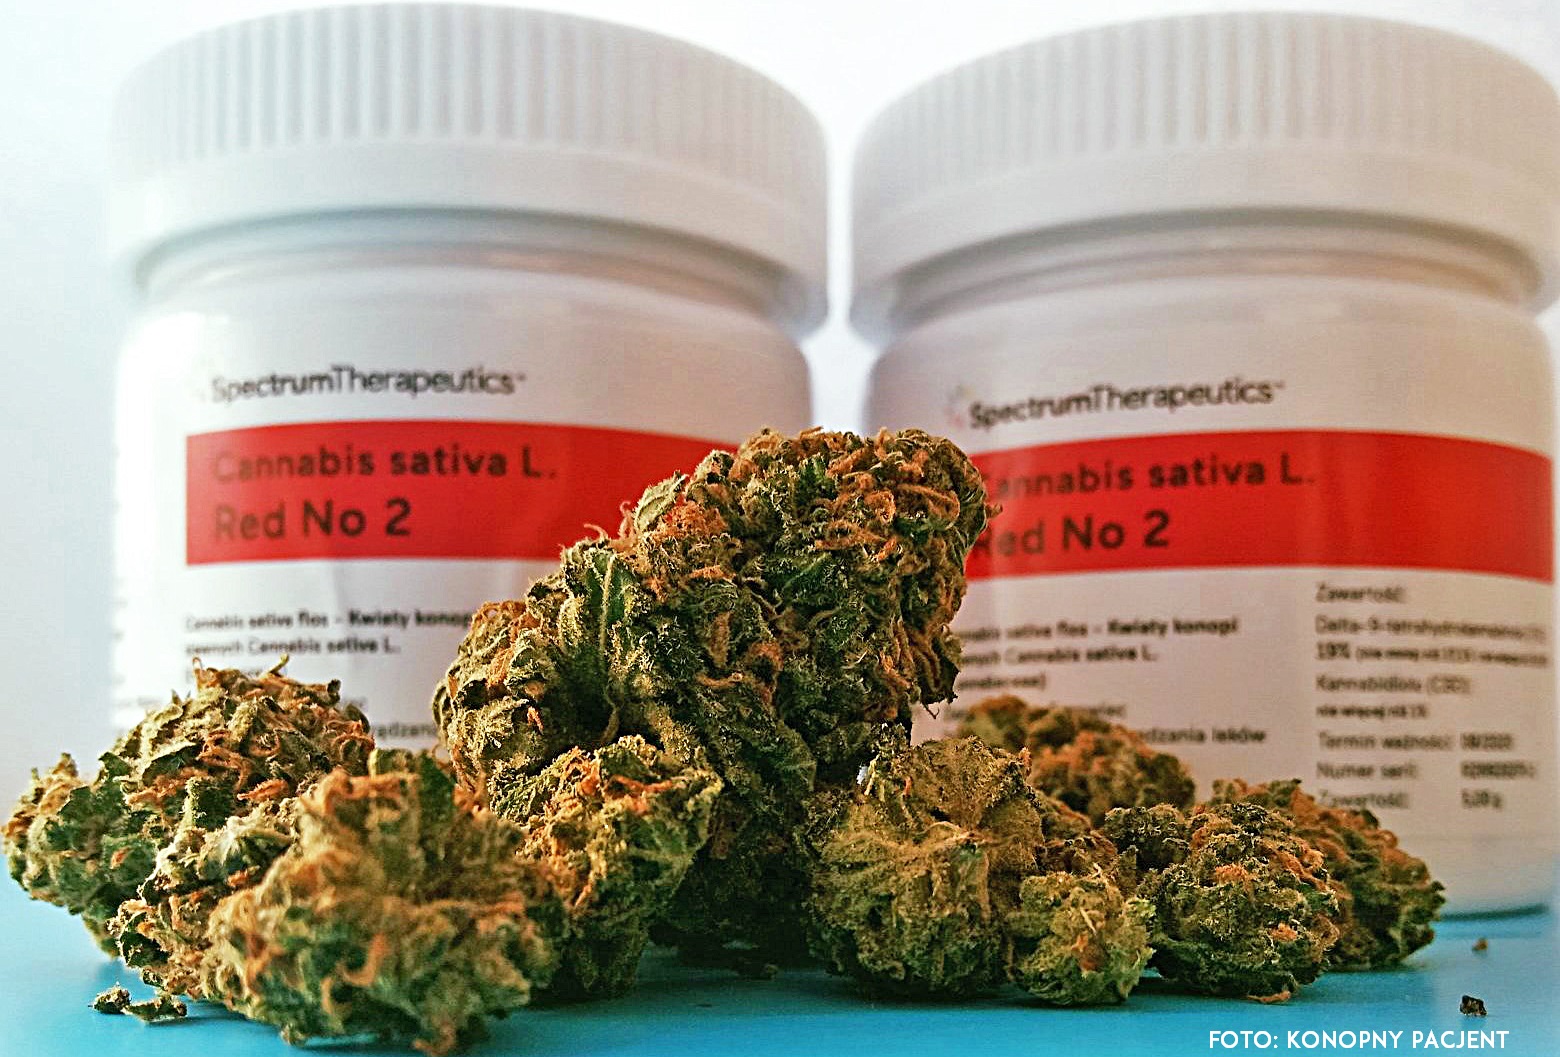 Medyczna marihuana Red No 2 od Spectrum Therapeutics przeceniona o 20% | WEEDNEWS.PL | Świat Zielonych Nowości